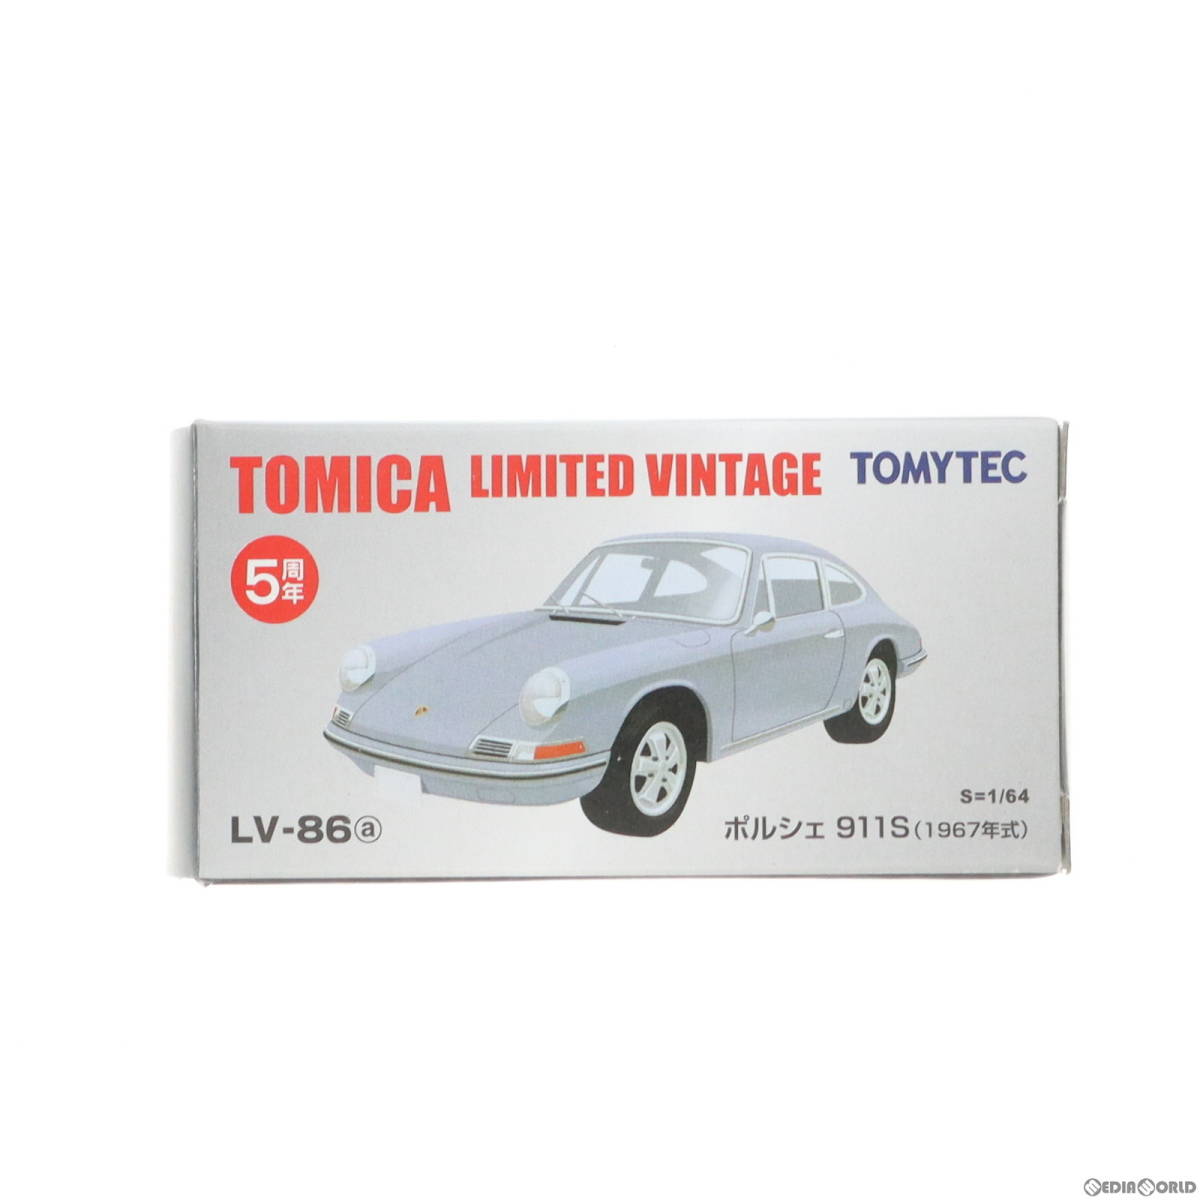 【中古】[MDL]トミカリミテッドヴィンテージ TLV-86a ポルシェ911S 1967年式(シルバー) 1/64 完成品 ミニカー(222477) TOMYTEC(トミーテッ